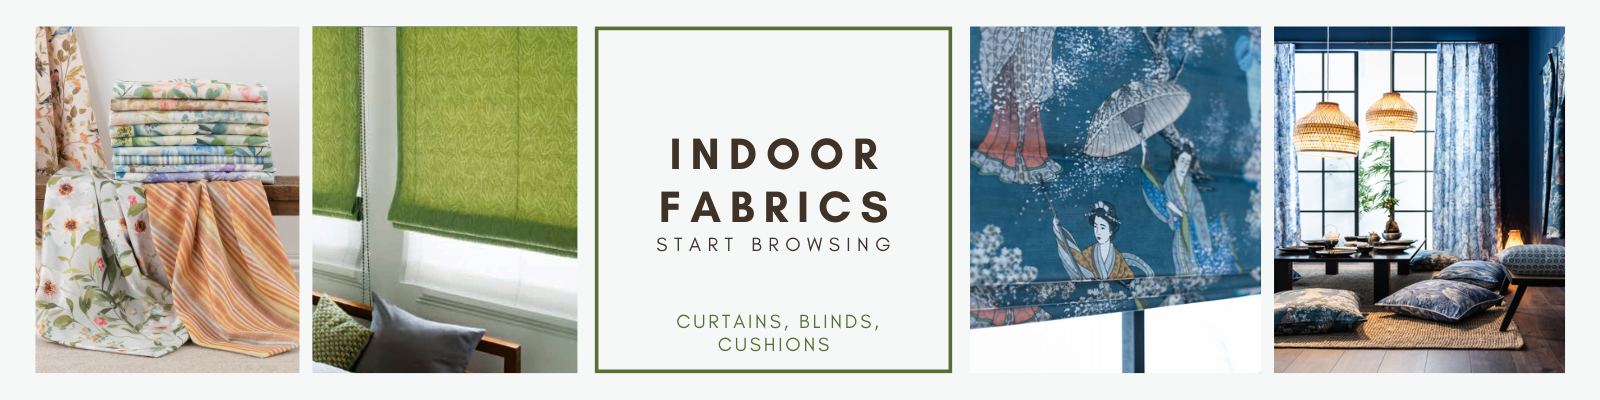 Indoor Fabrics